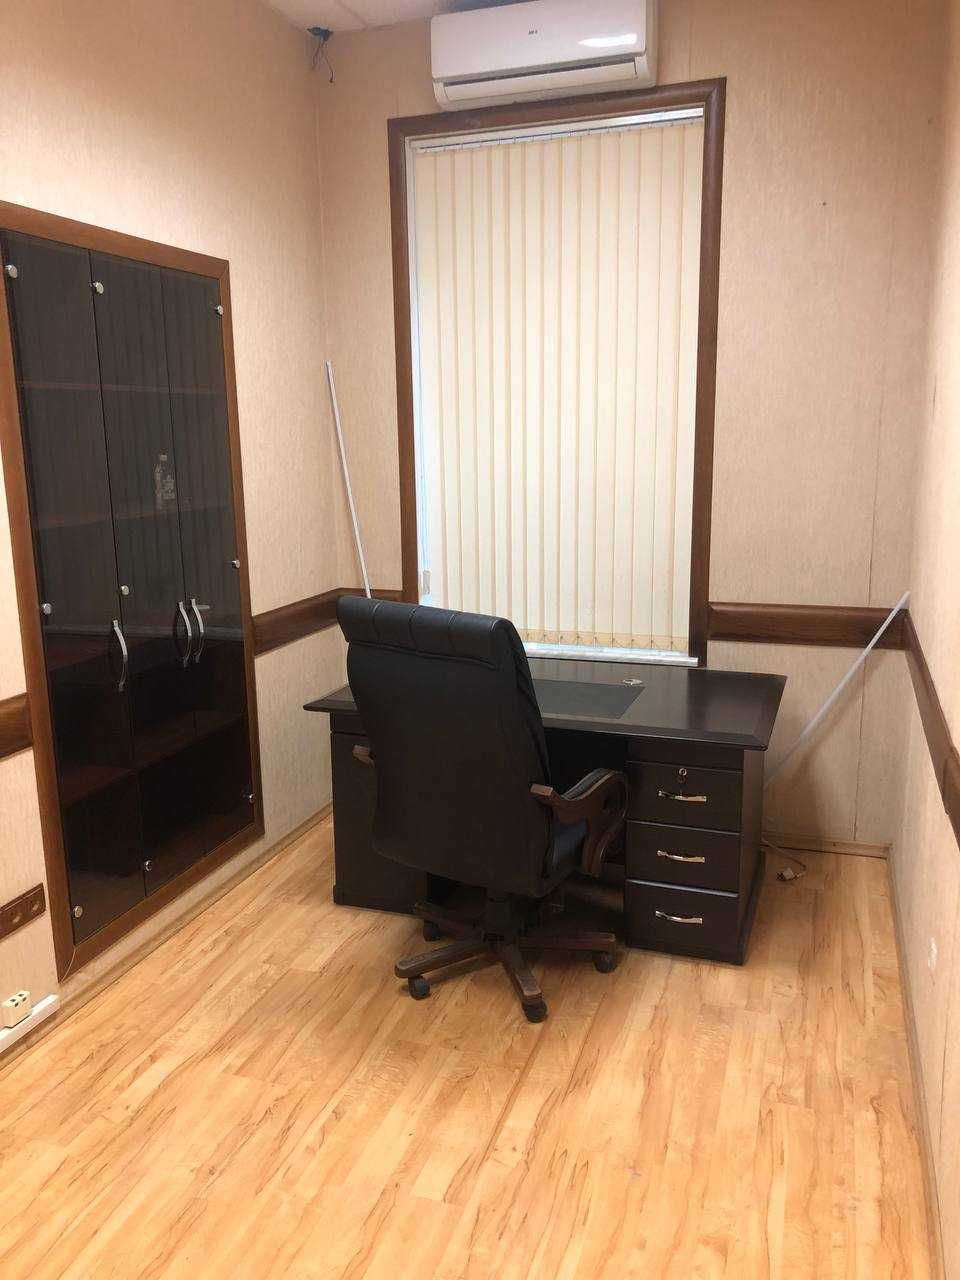 Сдам офис с мебелью в центре города. 67 м2. 3 кабинета